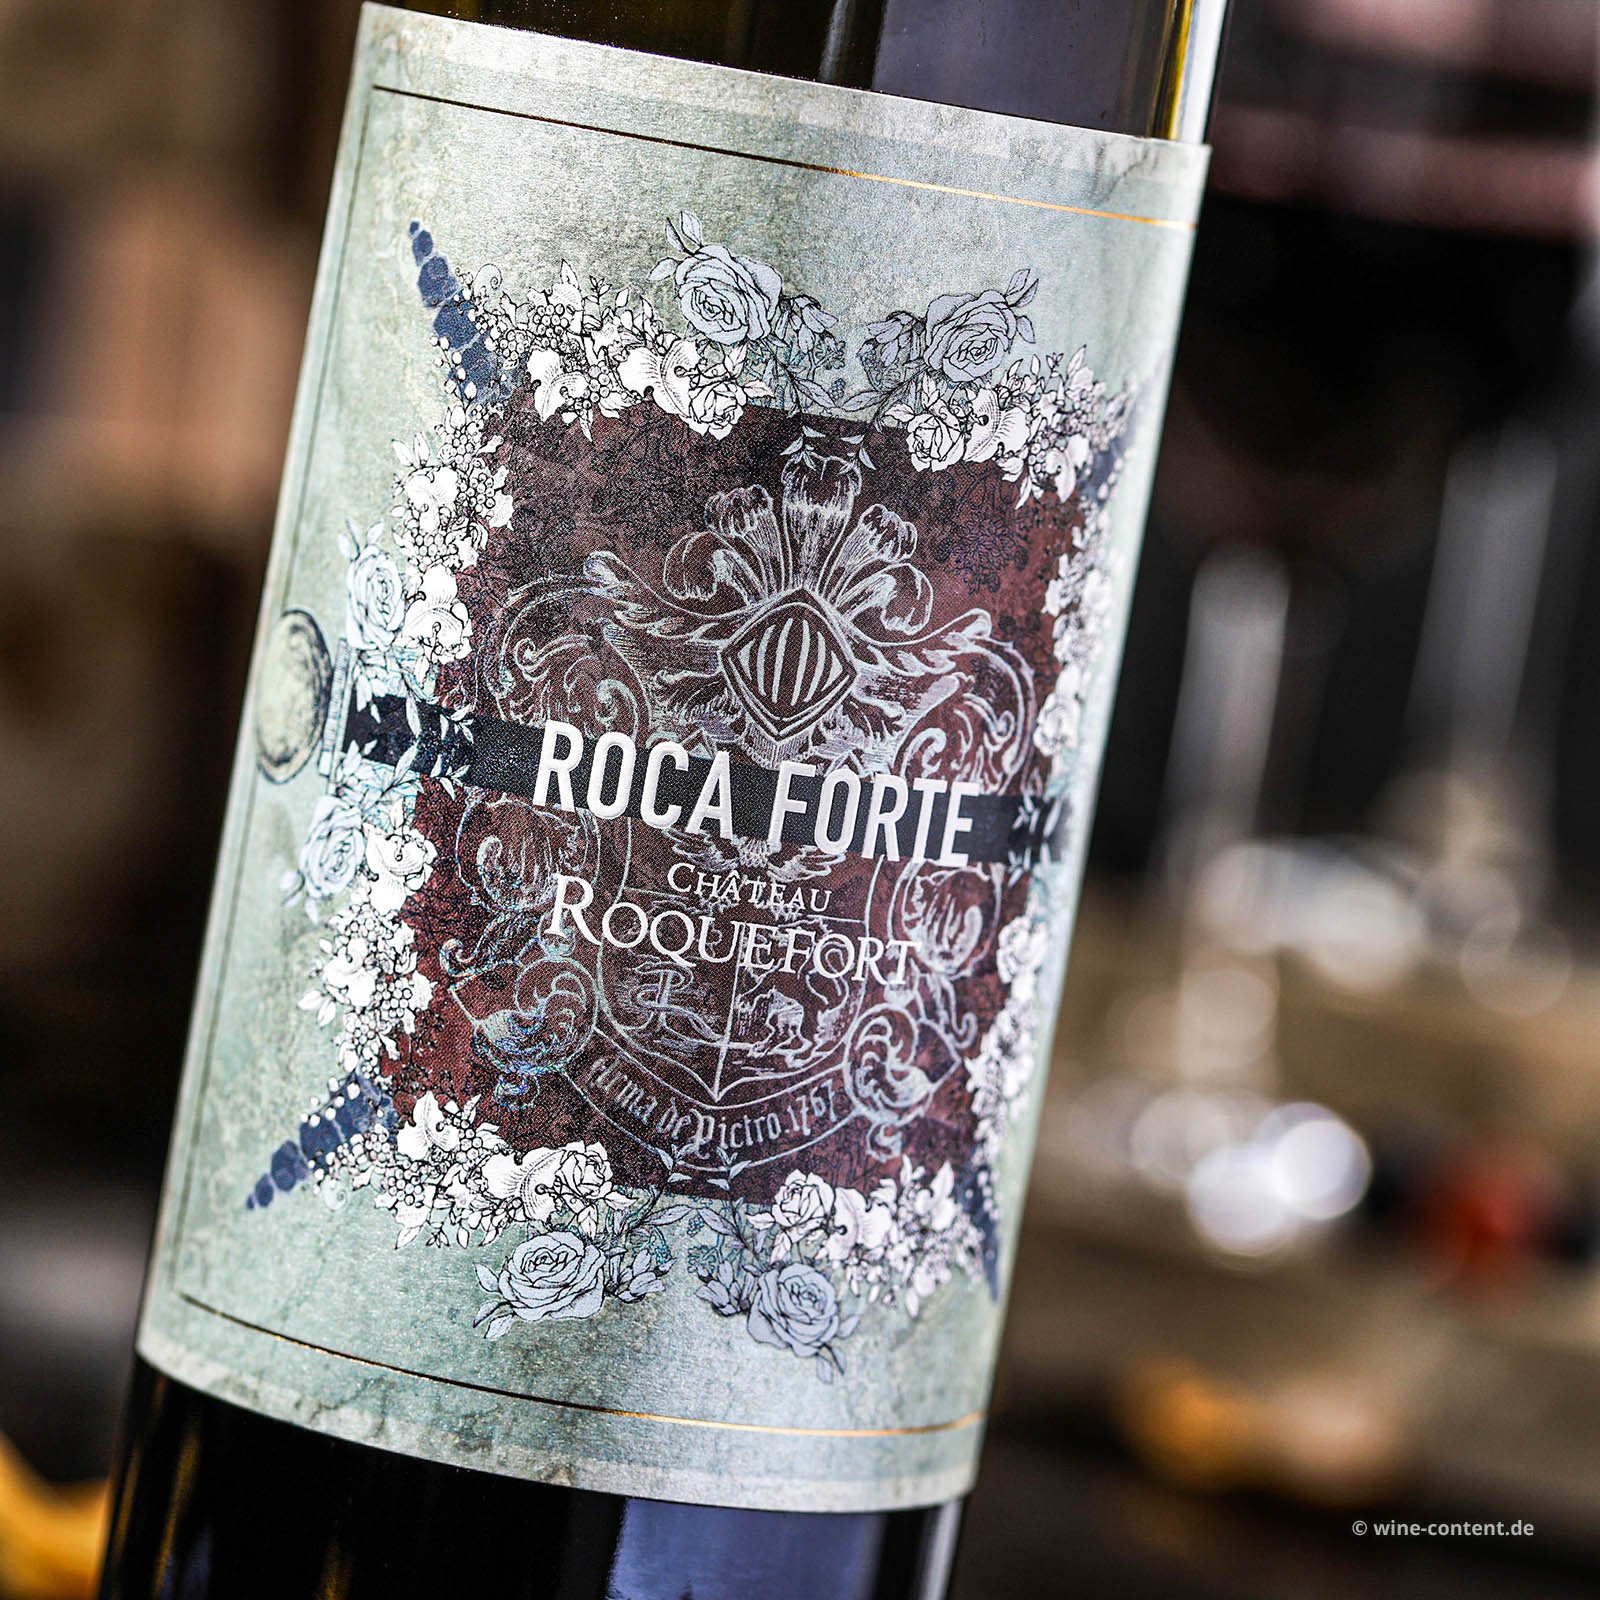 Bordeaux Supérieur 2019 Roca Forte